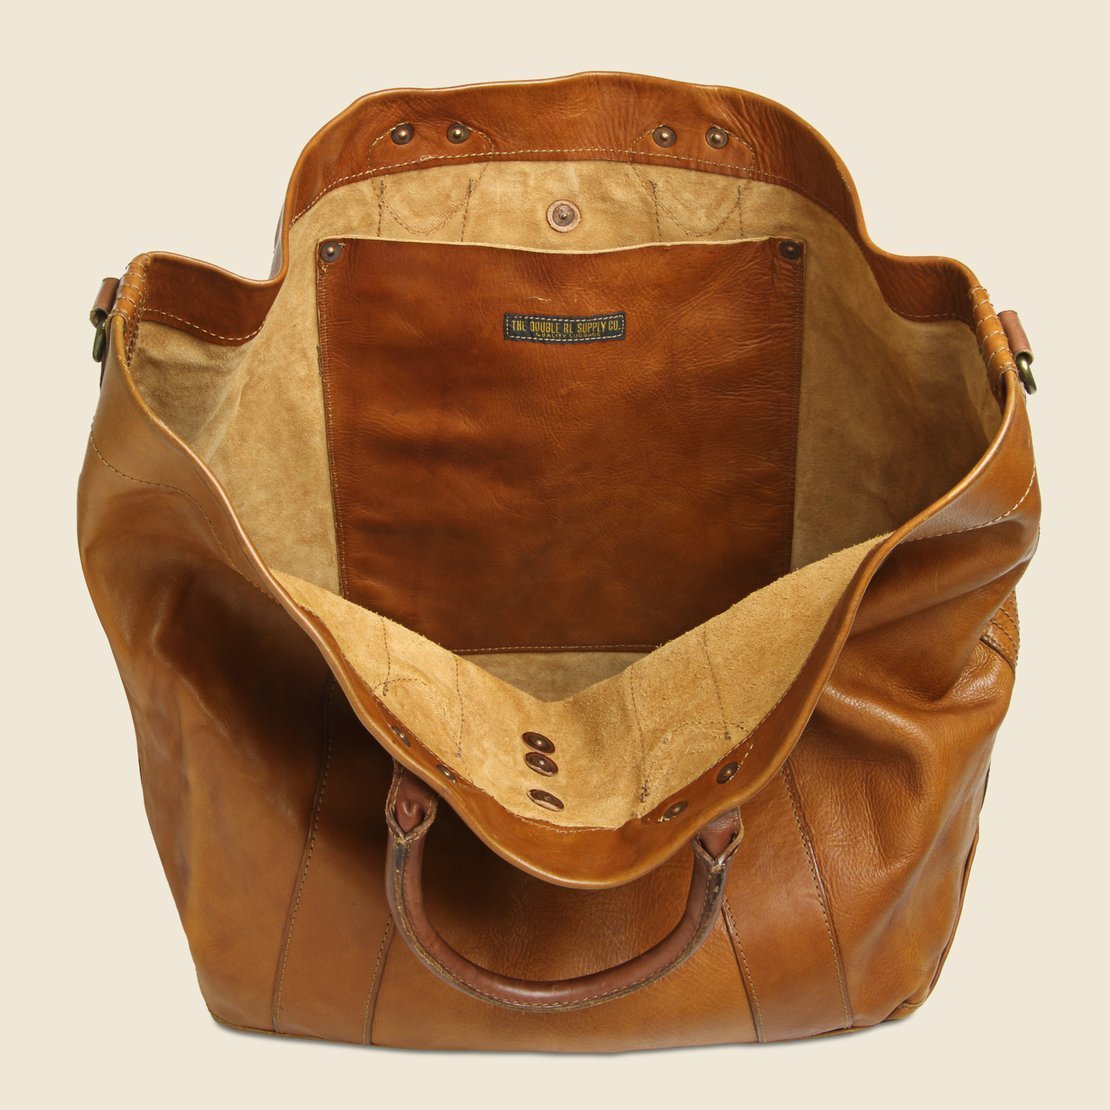 Vintage Leather Tote - Brown